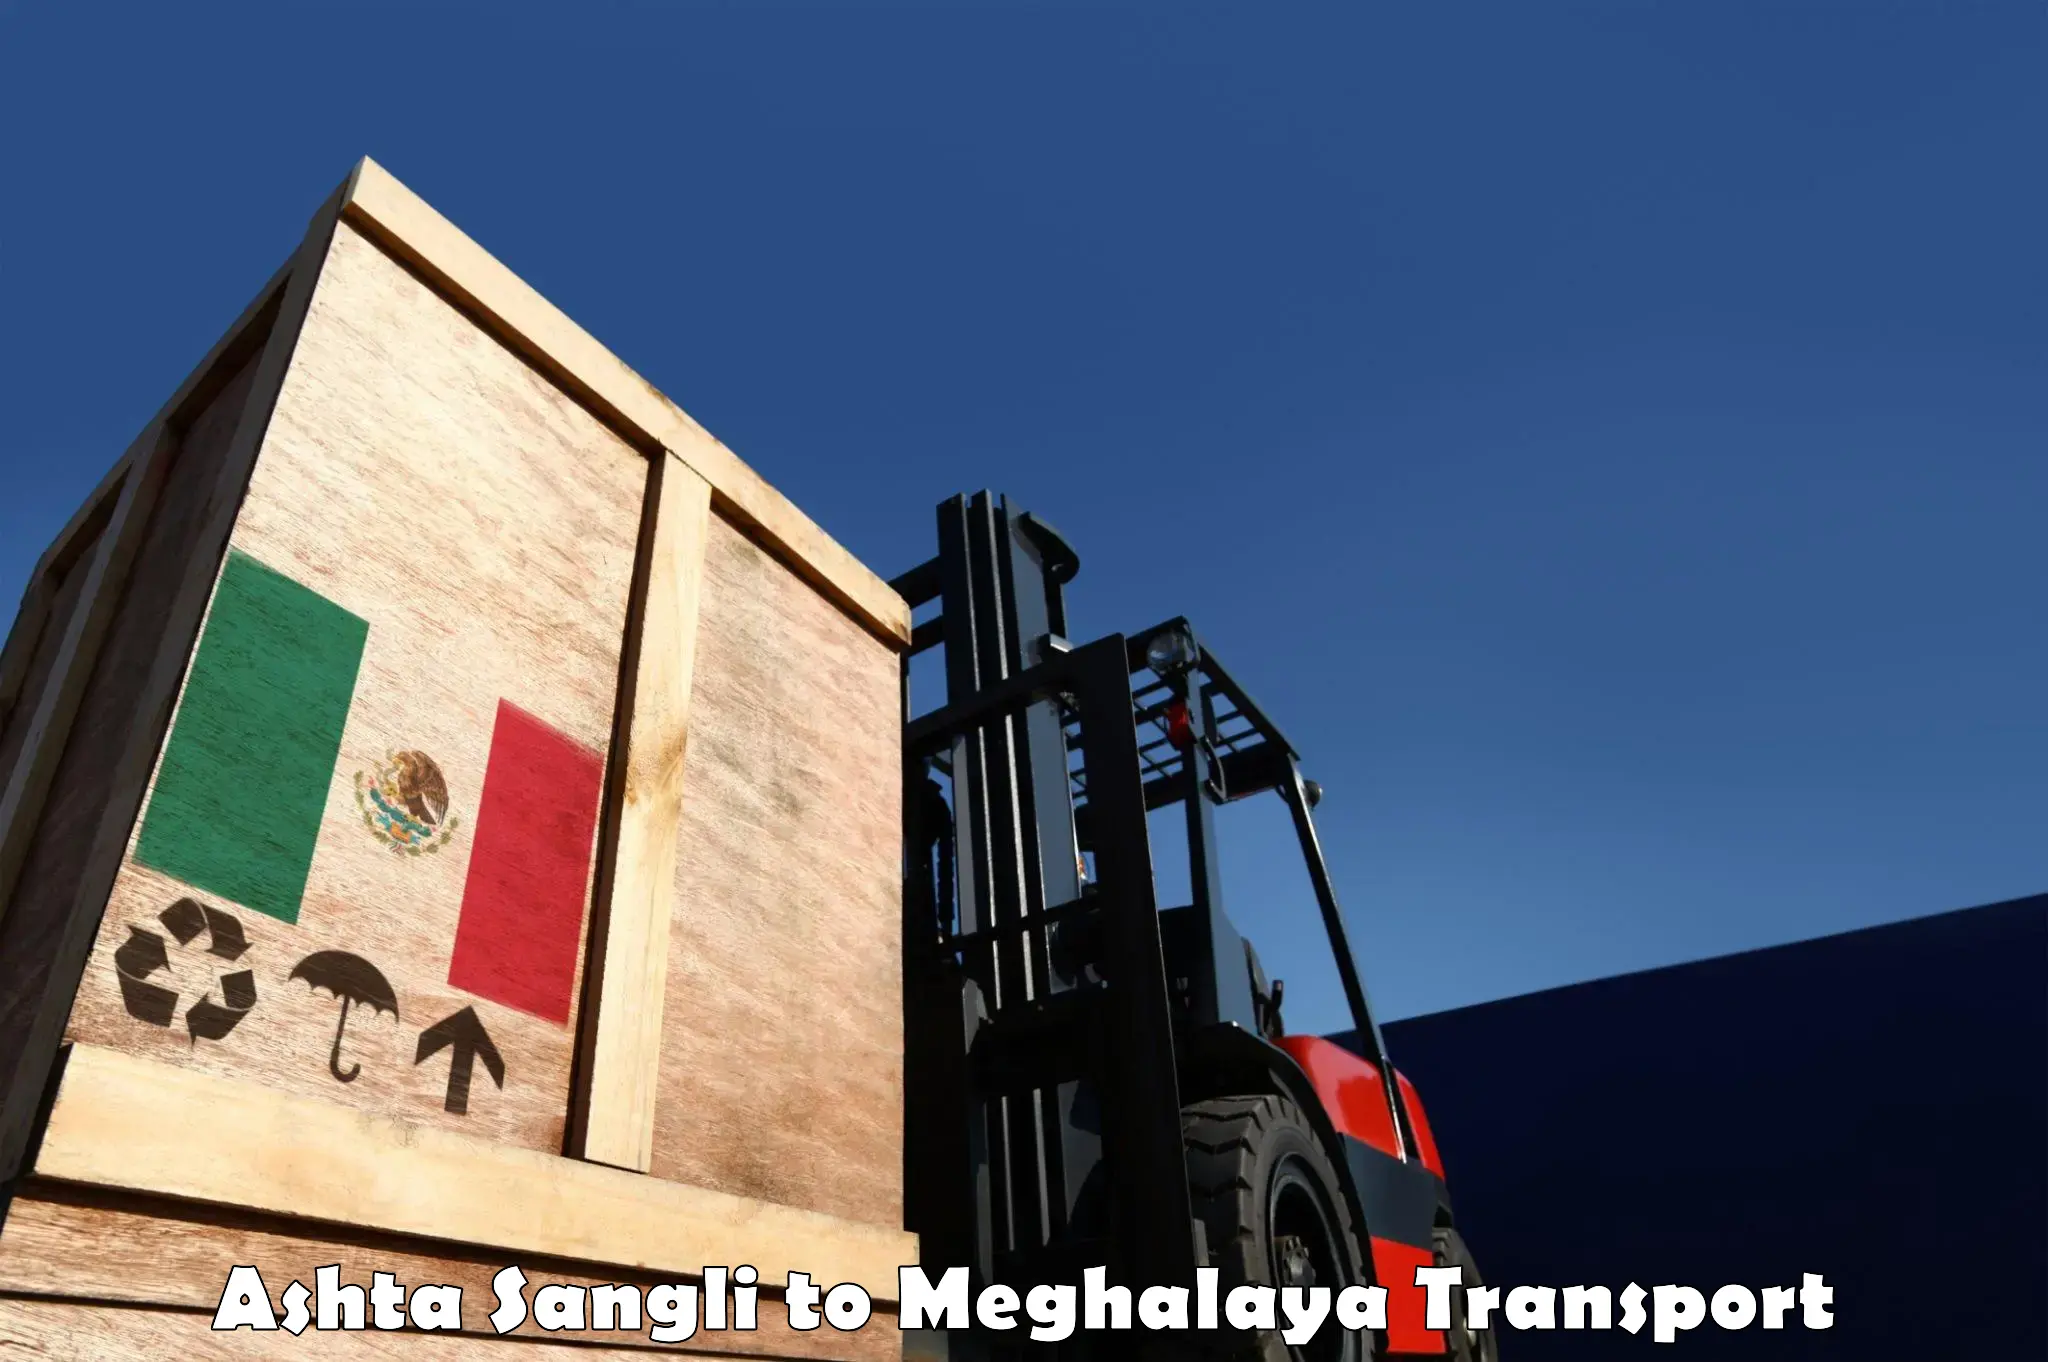 Commercial transport service Ashta Sangli to Marshillong